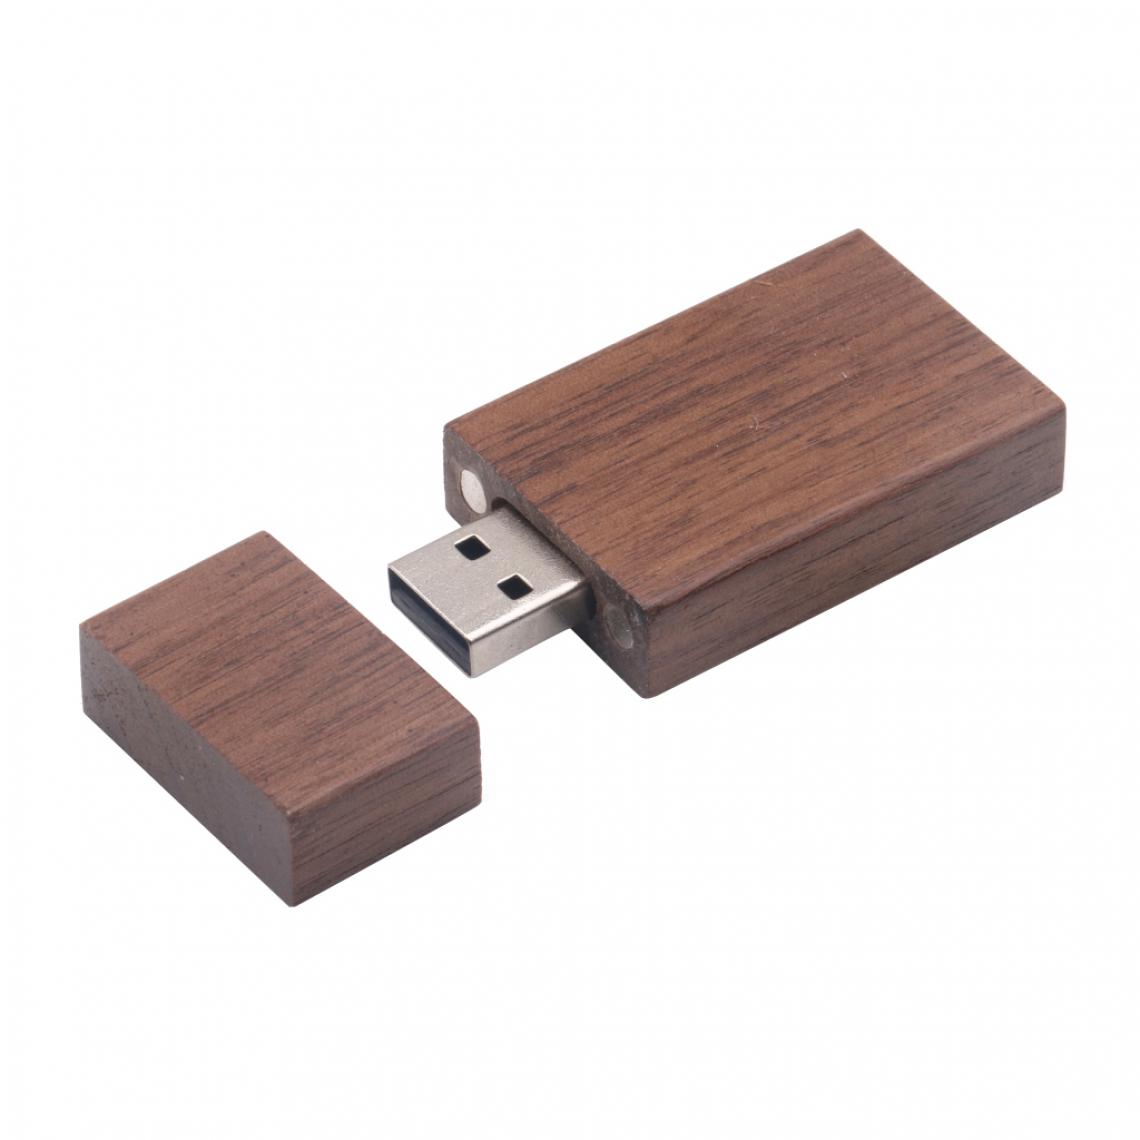 marque generique - Bois usb 2.0 memory stick flash drive u disque w / boîte en bois pour pc 8gb - Clés USB